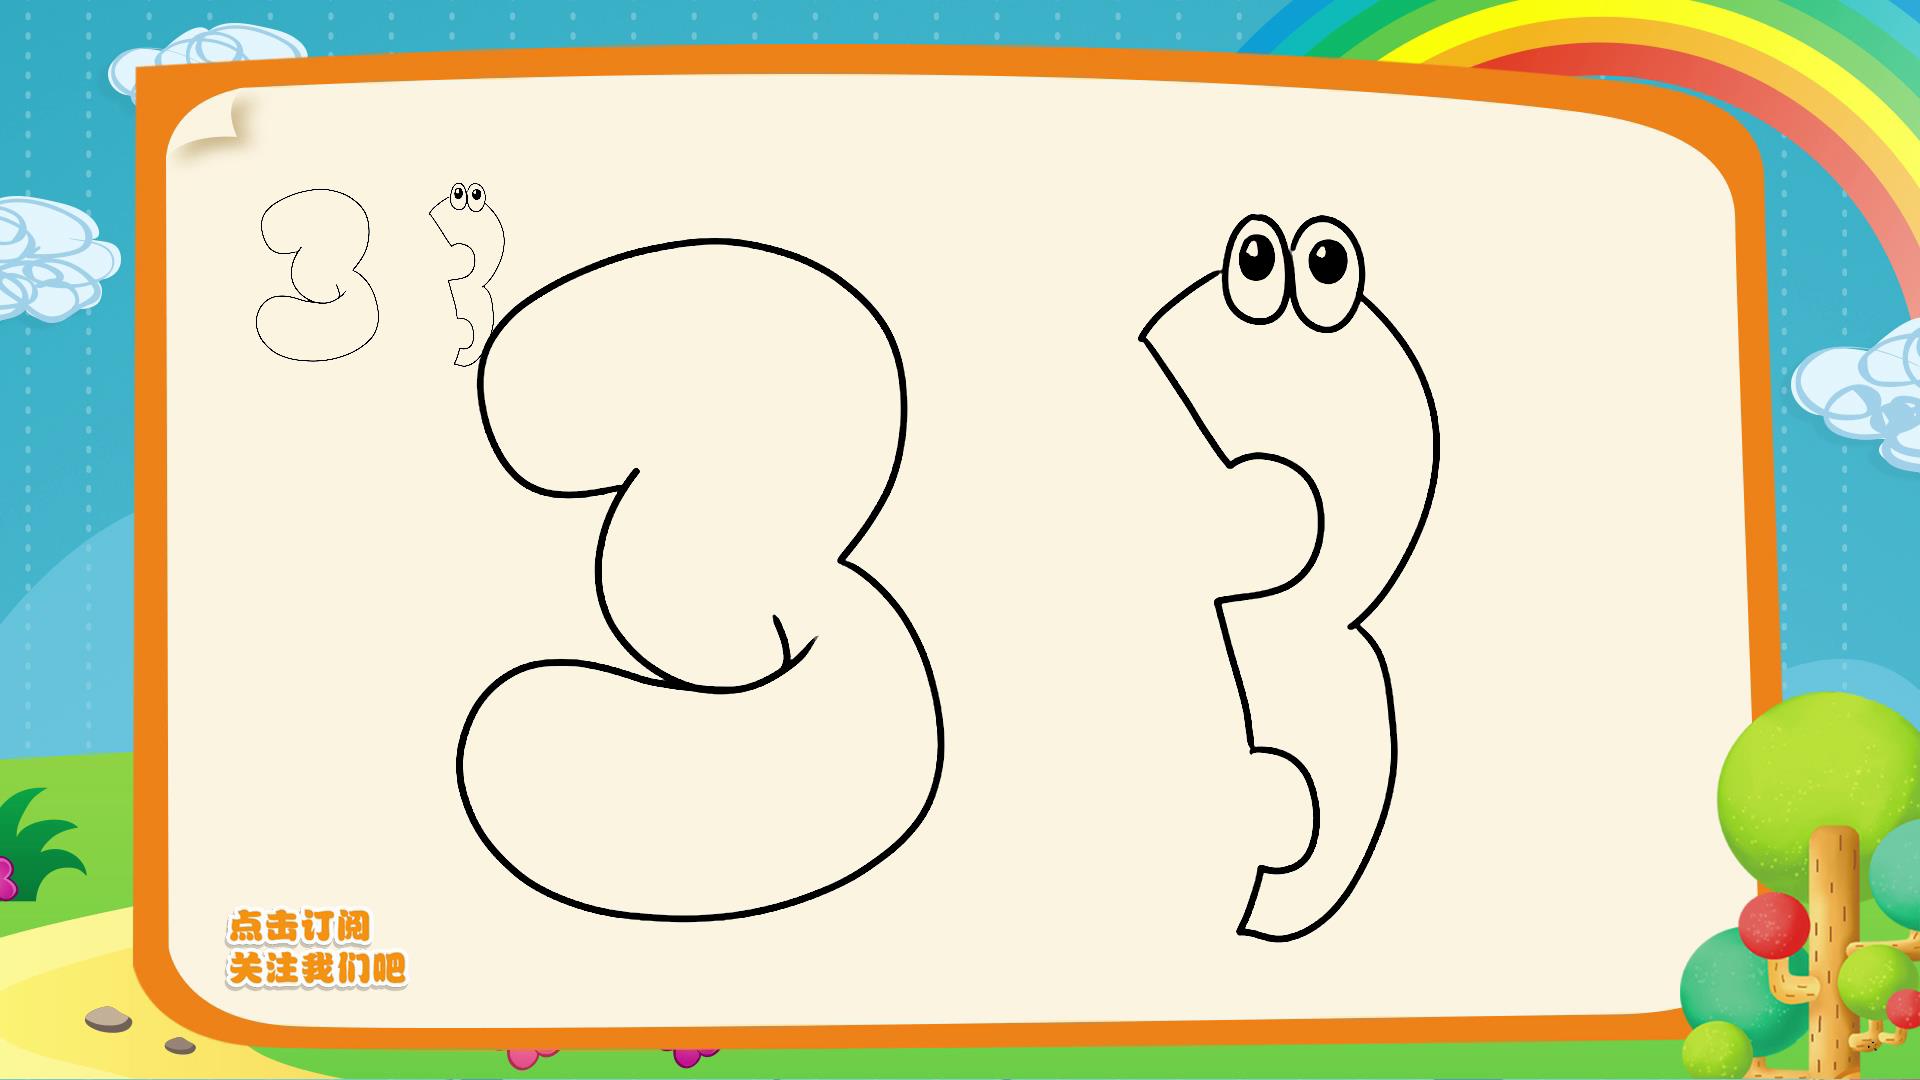 10数字简笔画,让你的孩子从绘画认识数字.